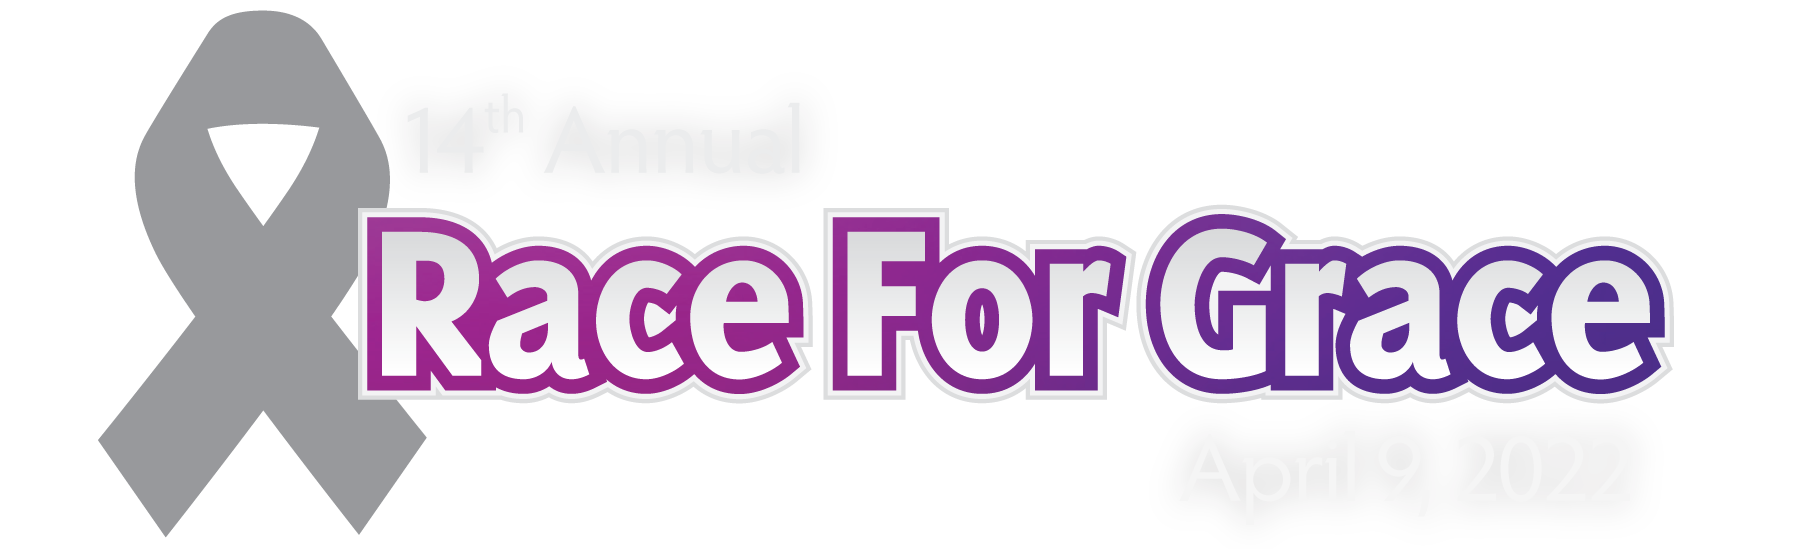 Race For Grace logo